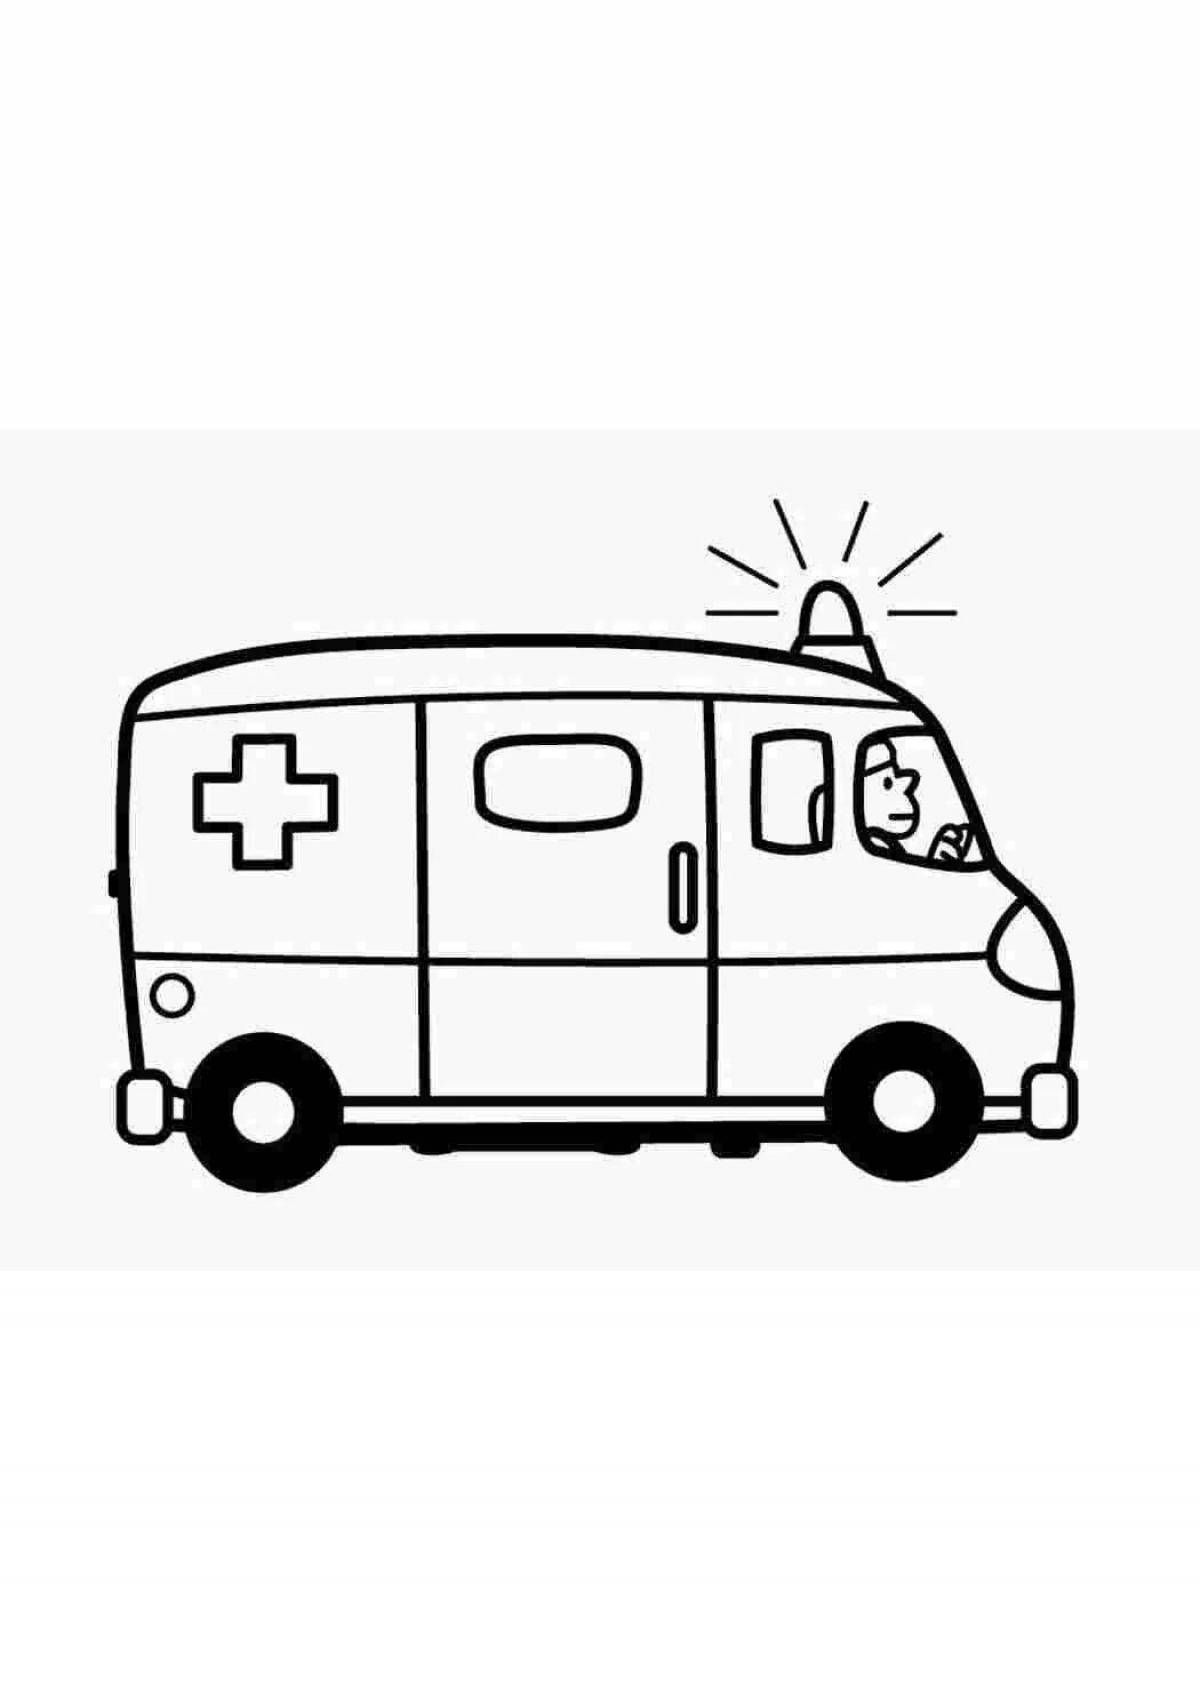 Динамический рисунок машины скорой помощи